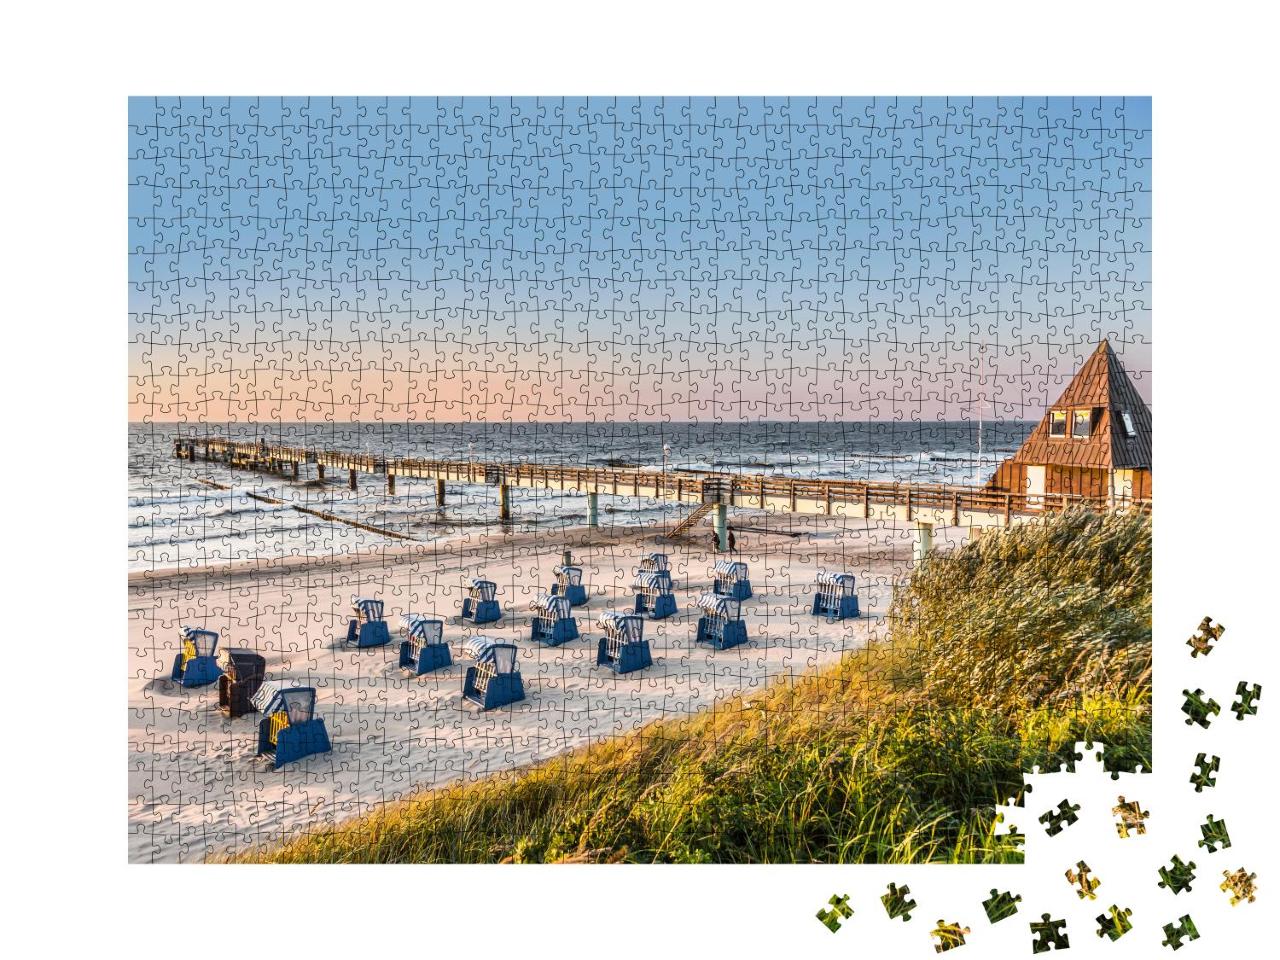 Puzzle 1000 Teile „Strandkörbe: Foto vom frühen Morgen an der Ostsee“